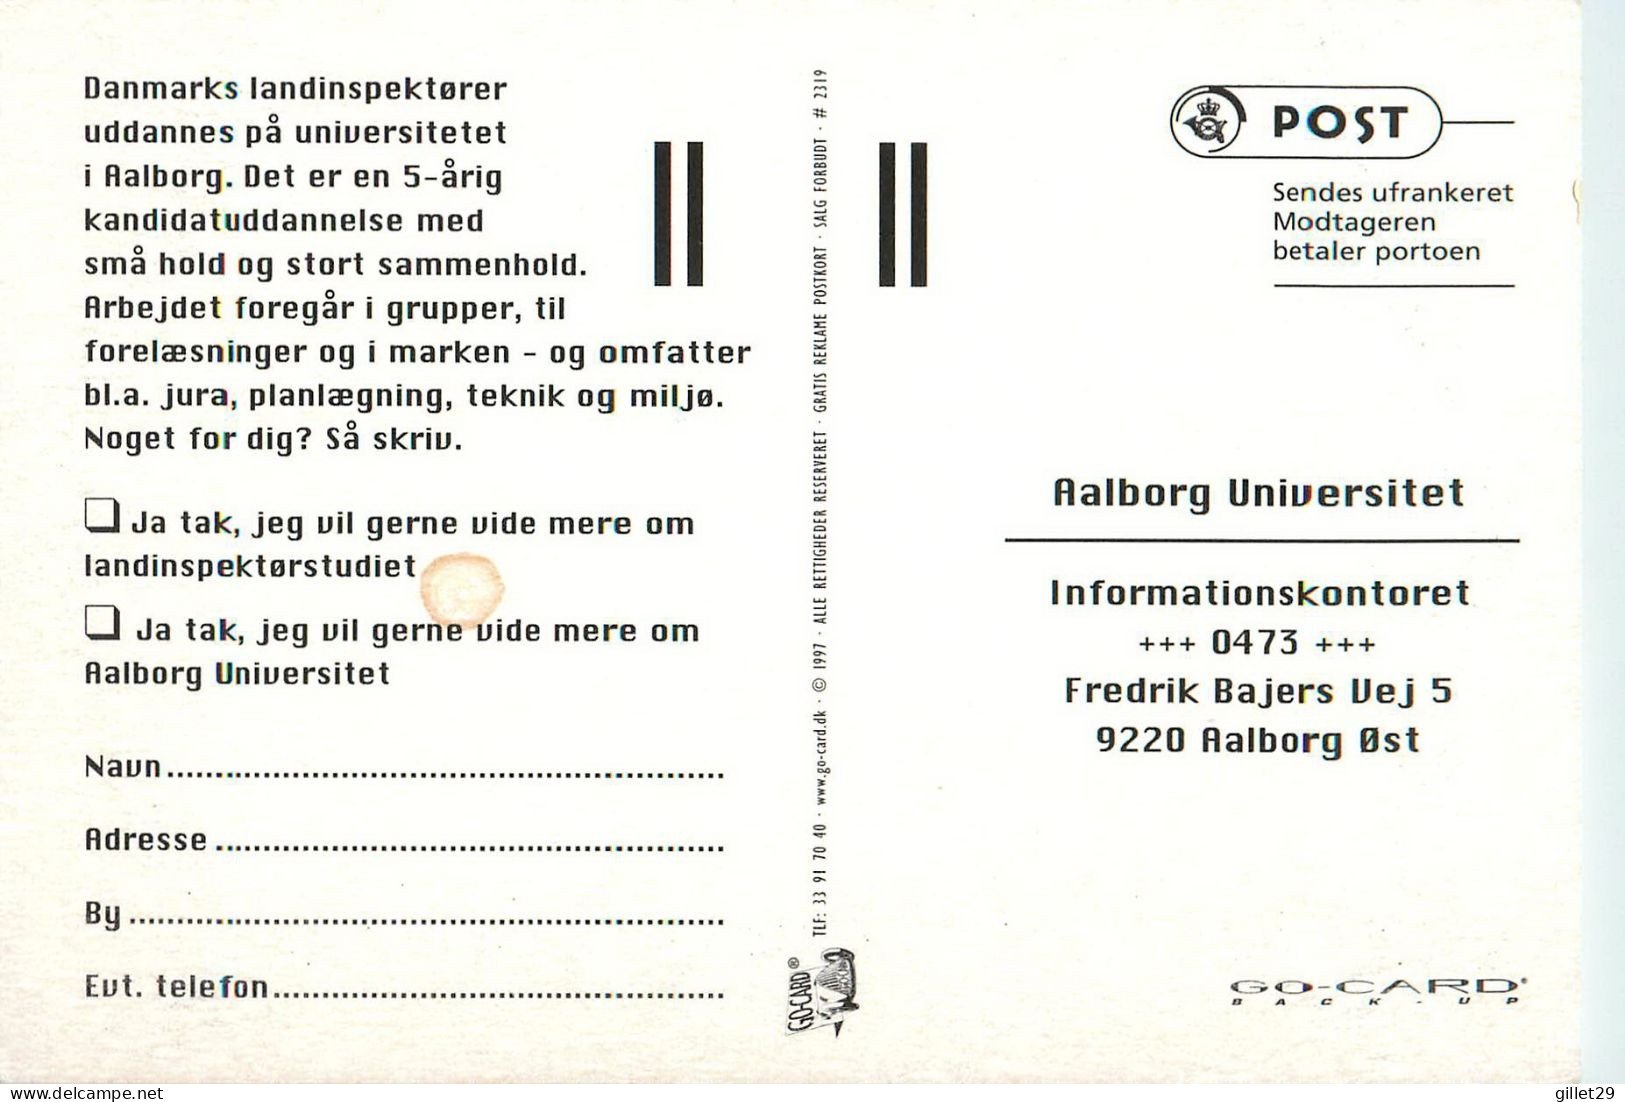 ADVERTISING, PUBLICITÉ - INSPECTEURS DES TERRES DU DANEMARK - GO-CARD 1997 No 2319 - - Advertising